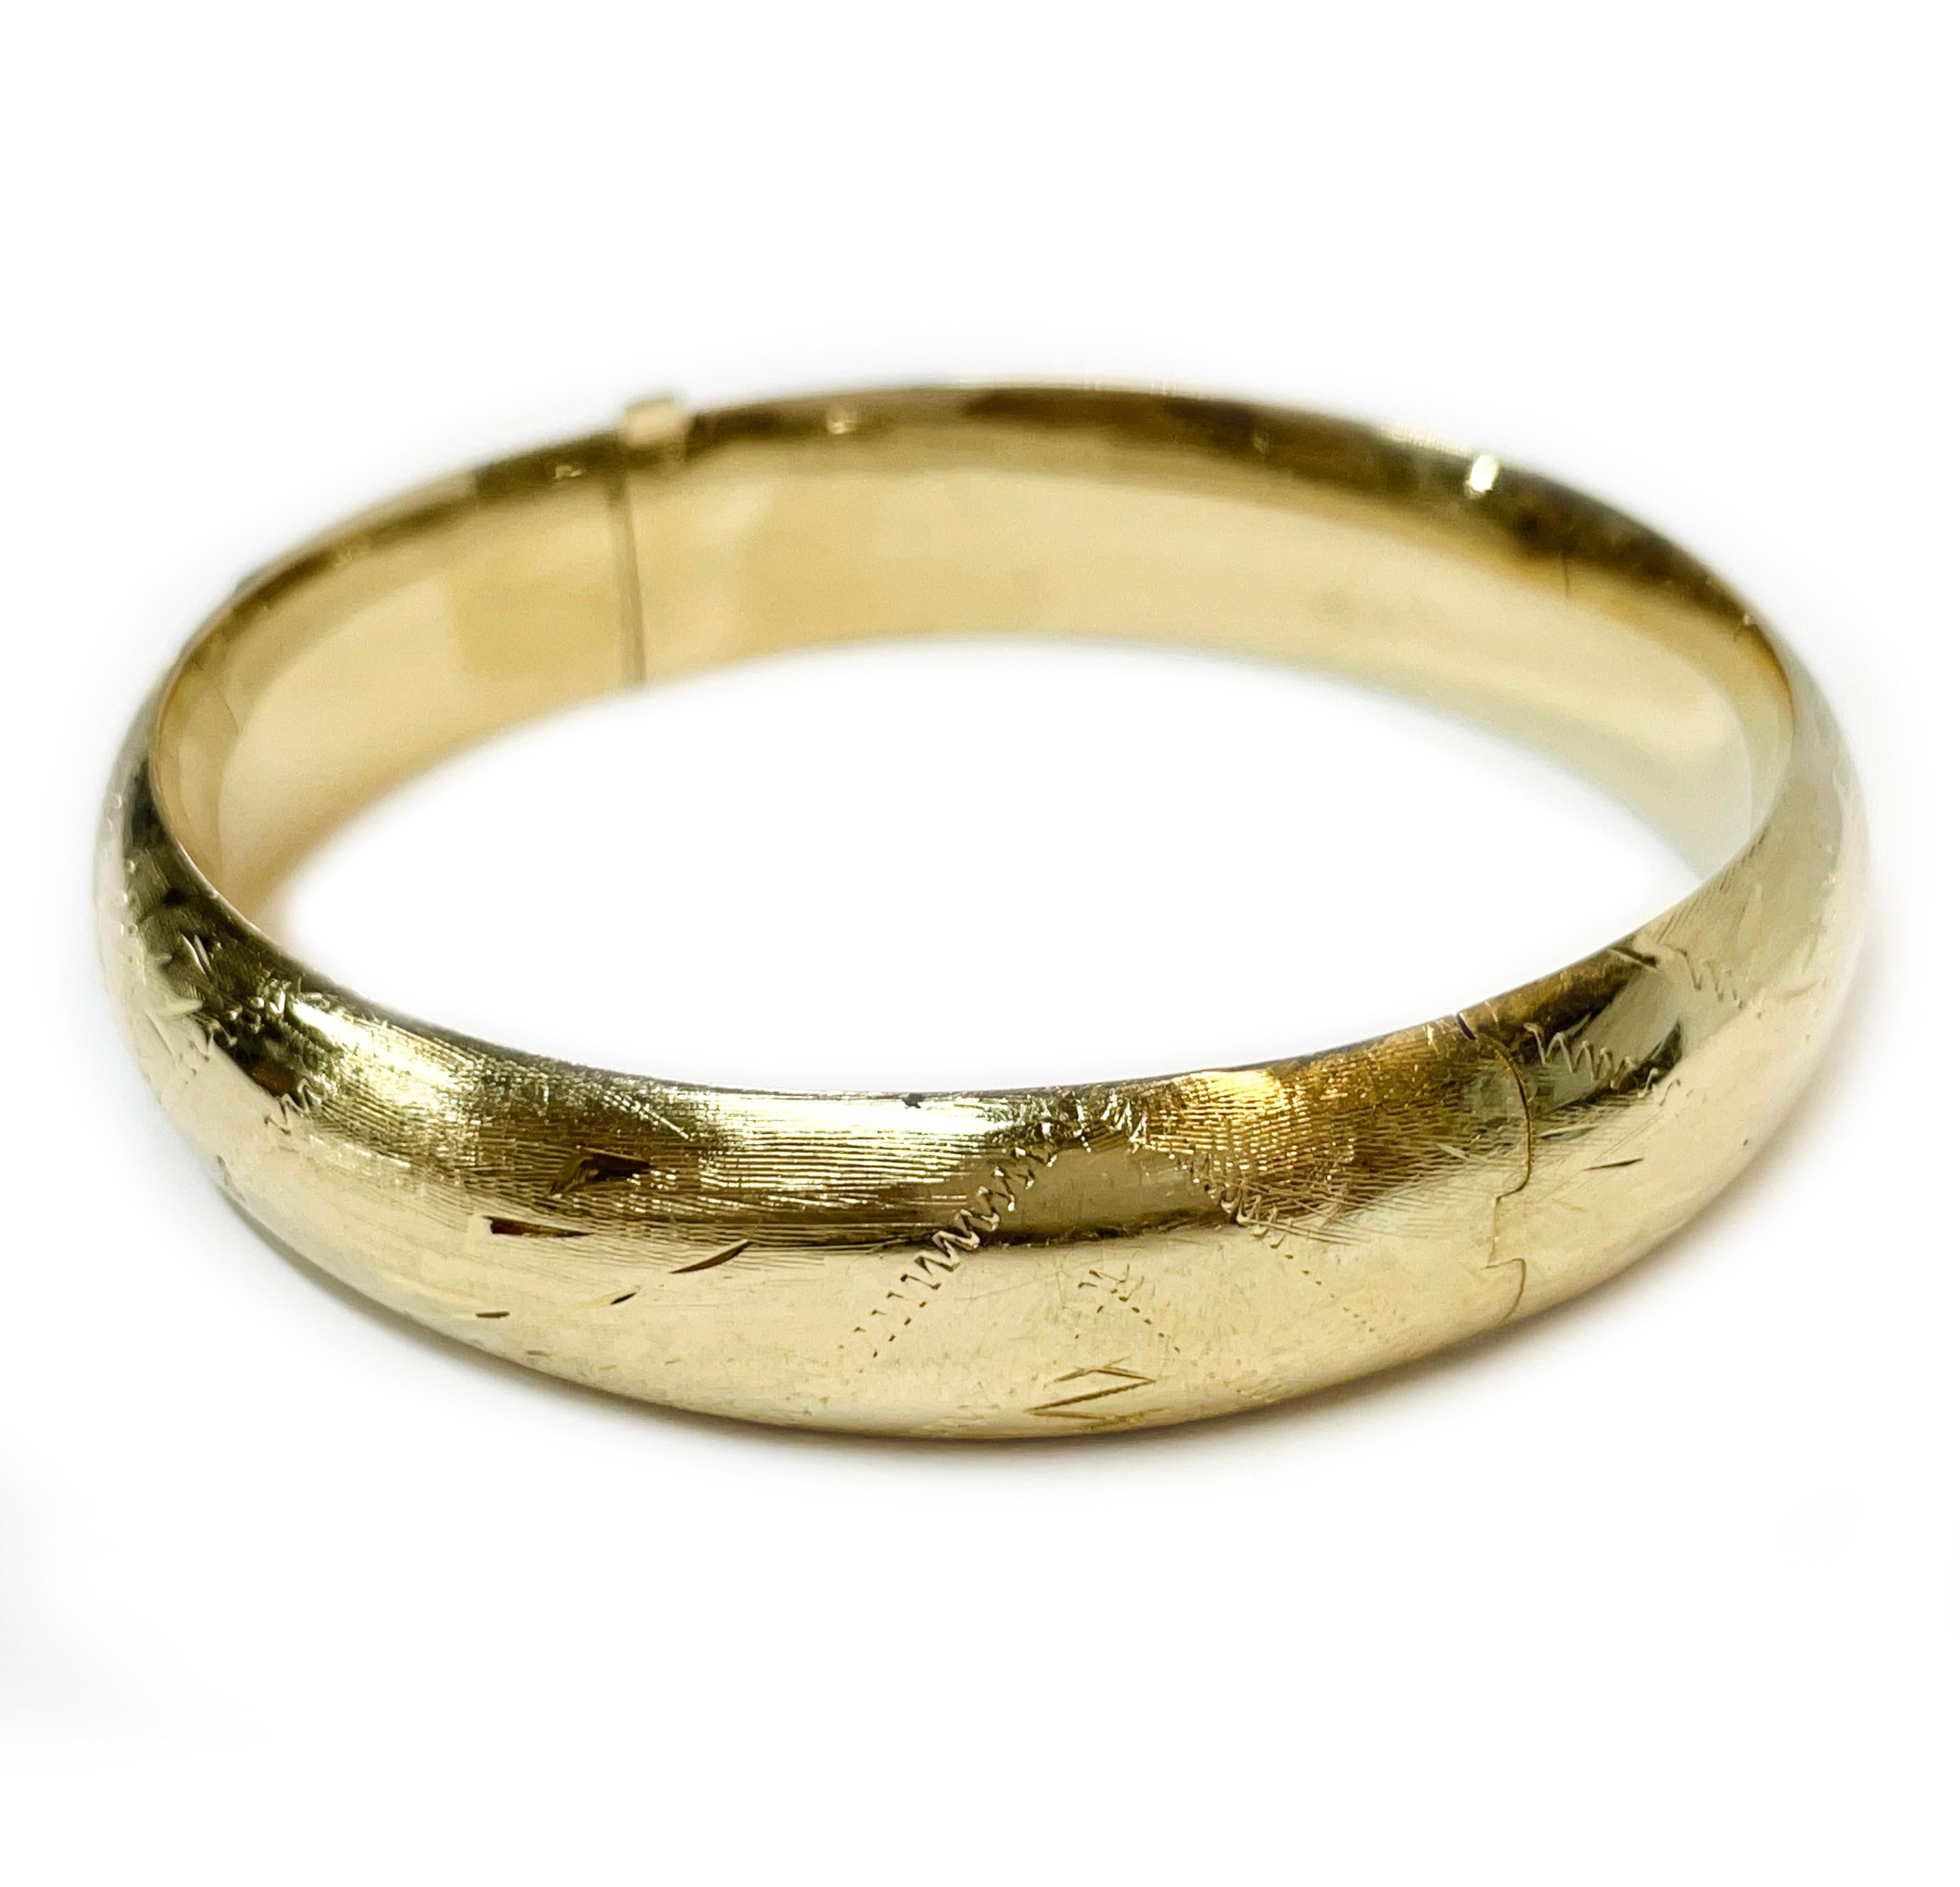 bracelet en or jaune 14 carats serti de diamants. Le bracelet creux présente des accents de diamants et des motifs de feuilles et de zigzags avec une finition texturée et lisse. Le marquage 14K est apposé sur la charnière du bracelet. Le bracelet a